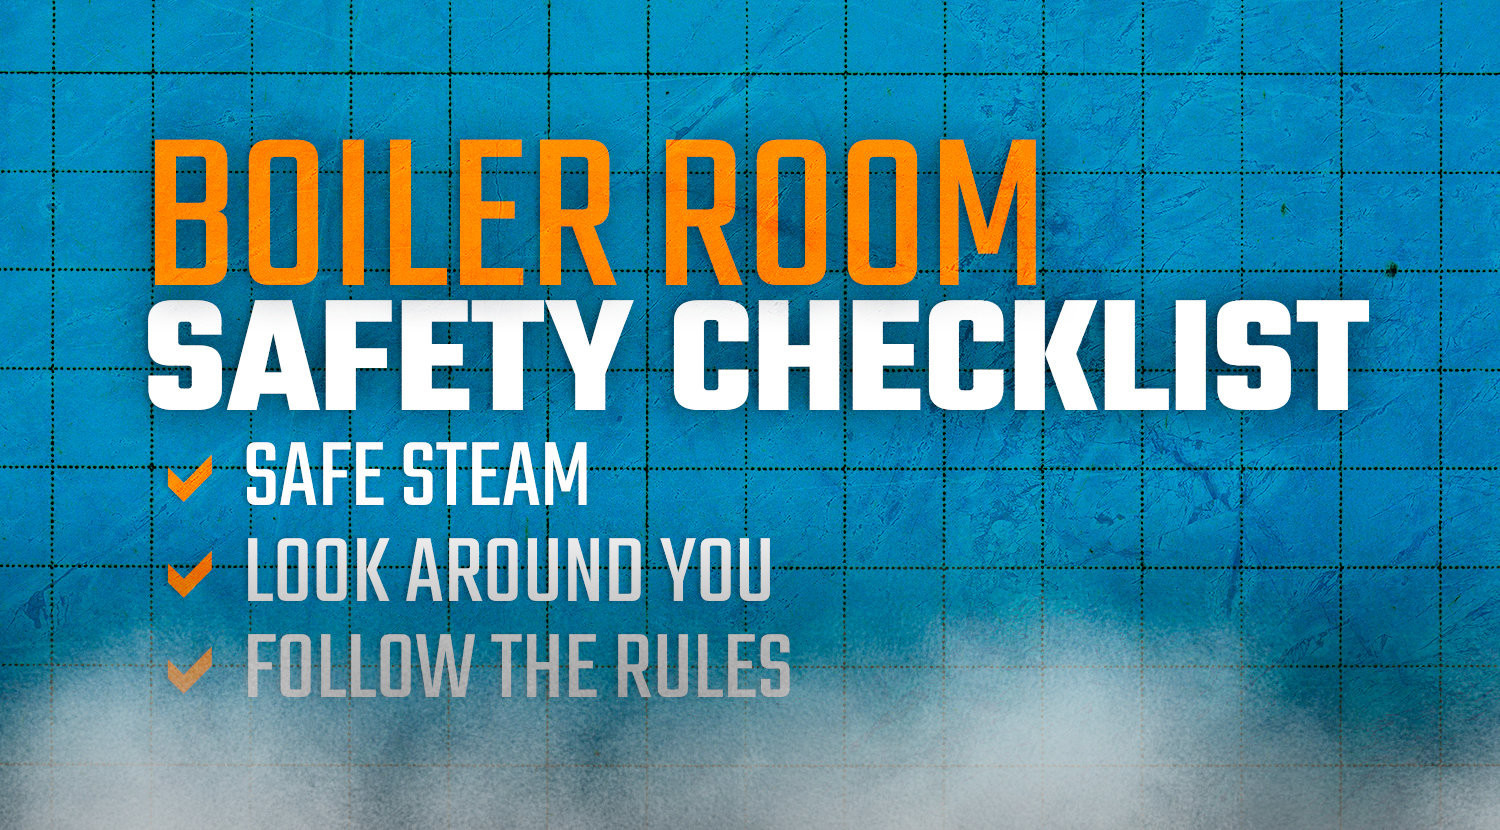 Weekendtas Sluit een verzekering af Liever Boiler Room Safety Checklist | WARE